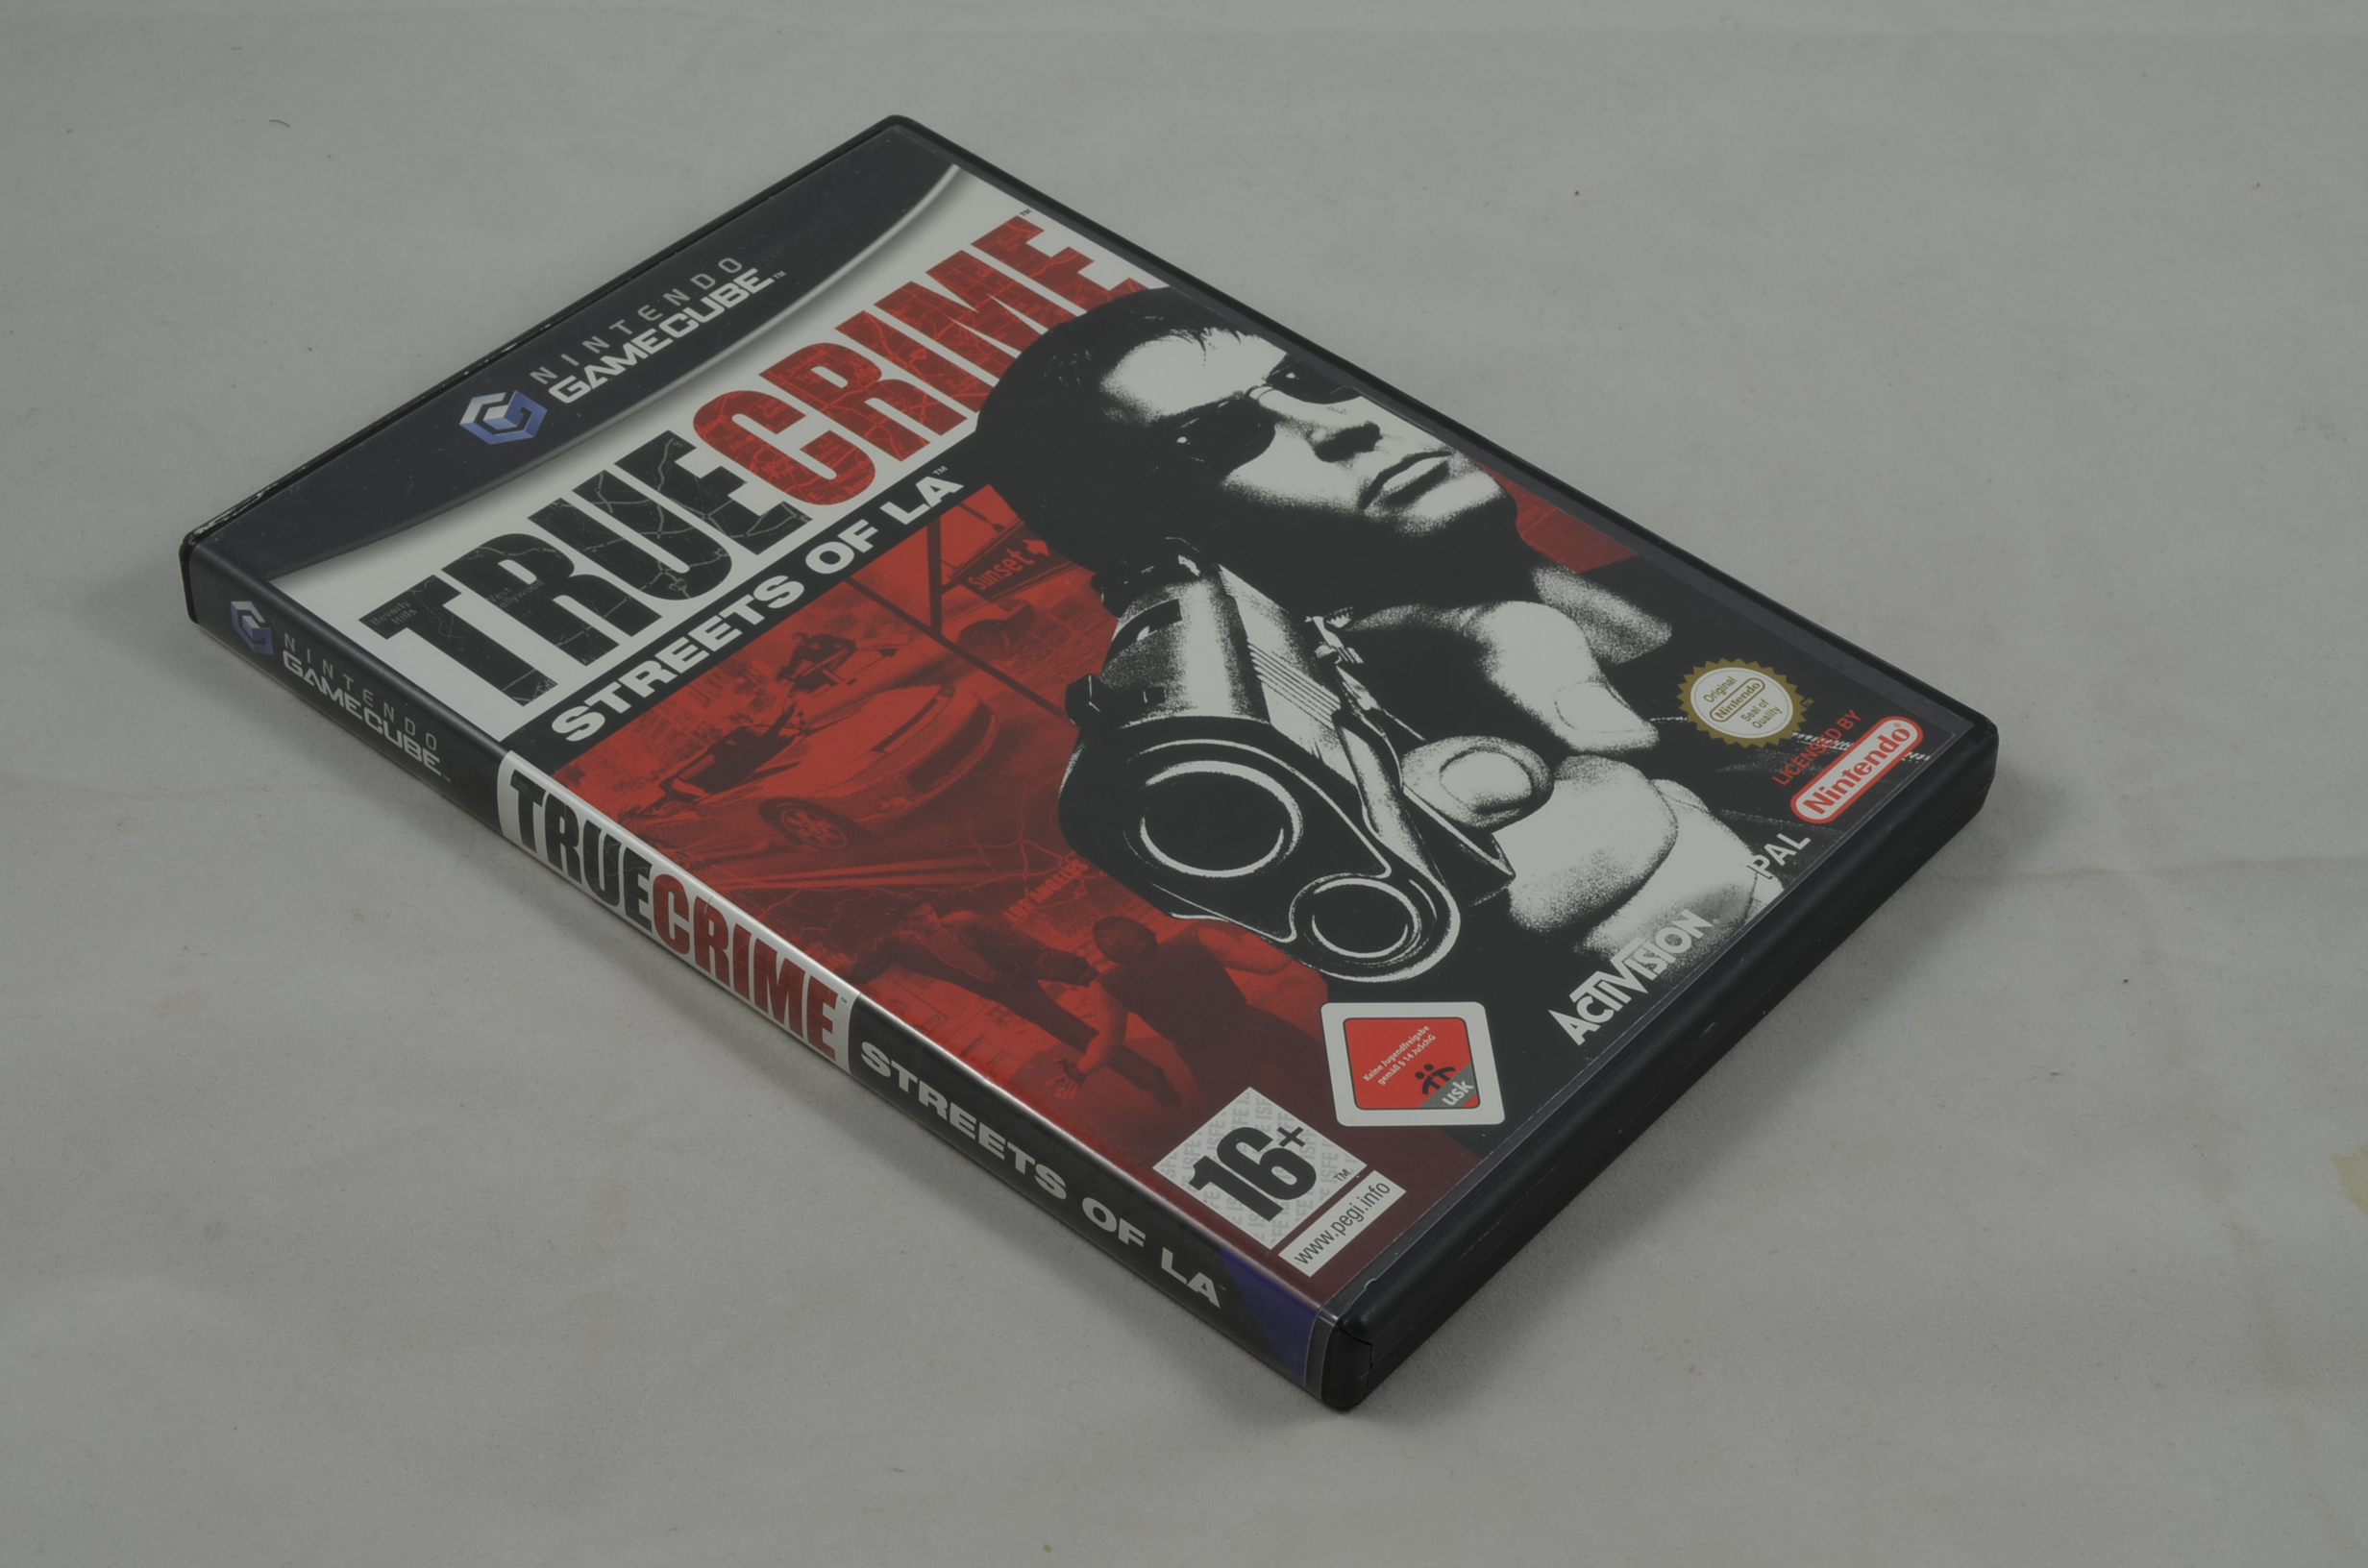 Produktbild von True Crime Streets of LA GameCube Spiel CIB (sehr gut)